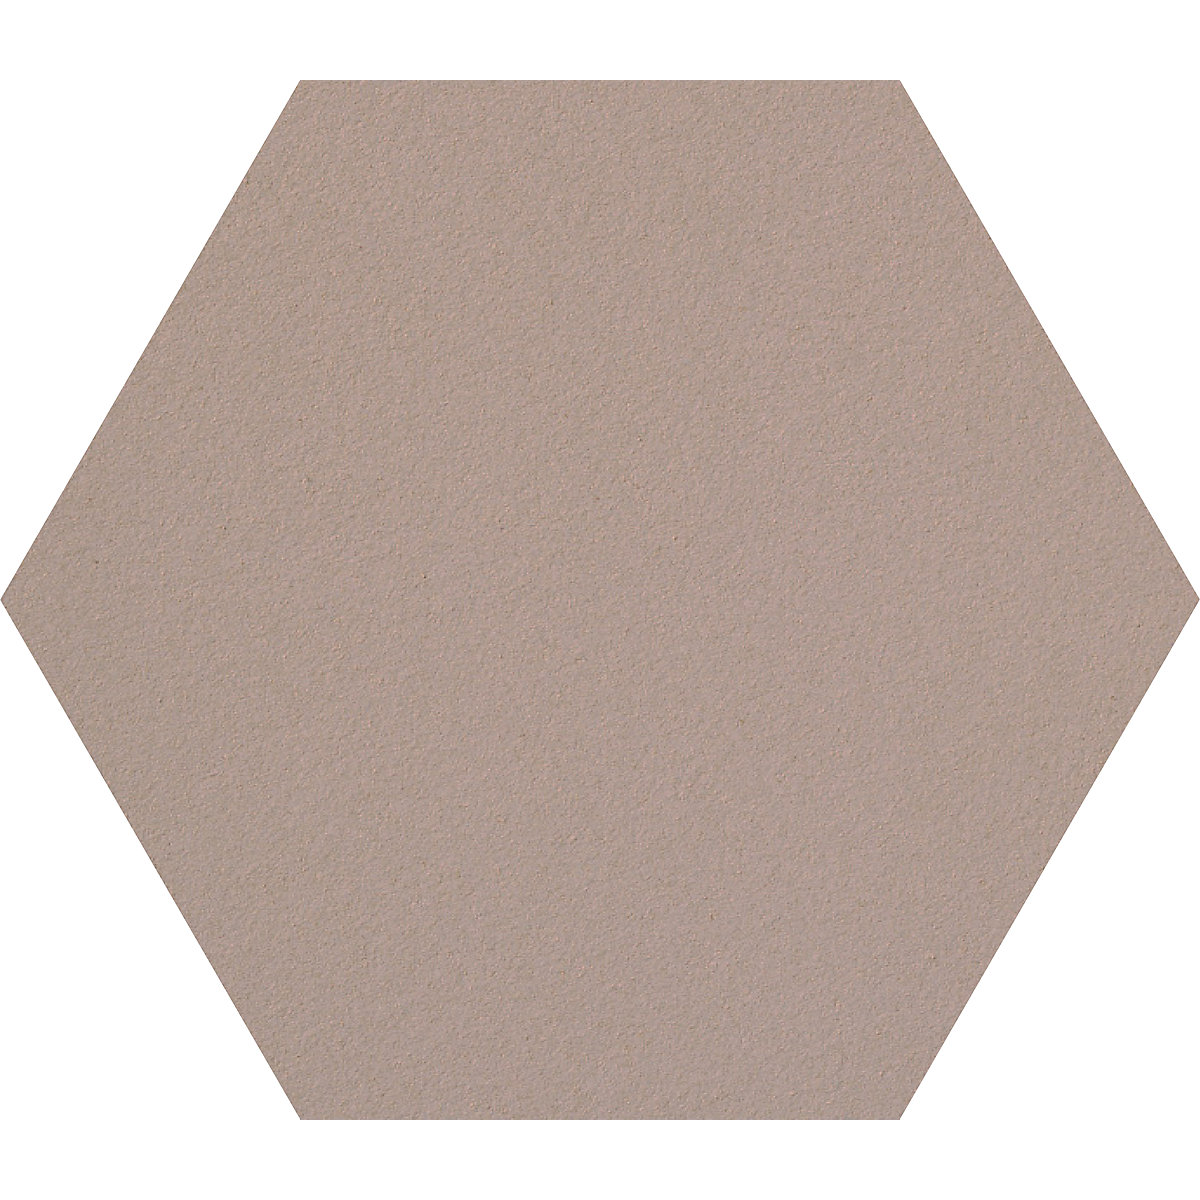 Hexagonal designer pin board – Chameleon, cork, WxH 600 x 600 mm, sand-36